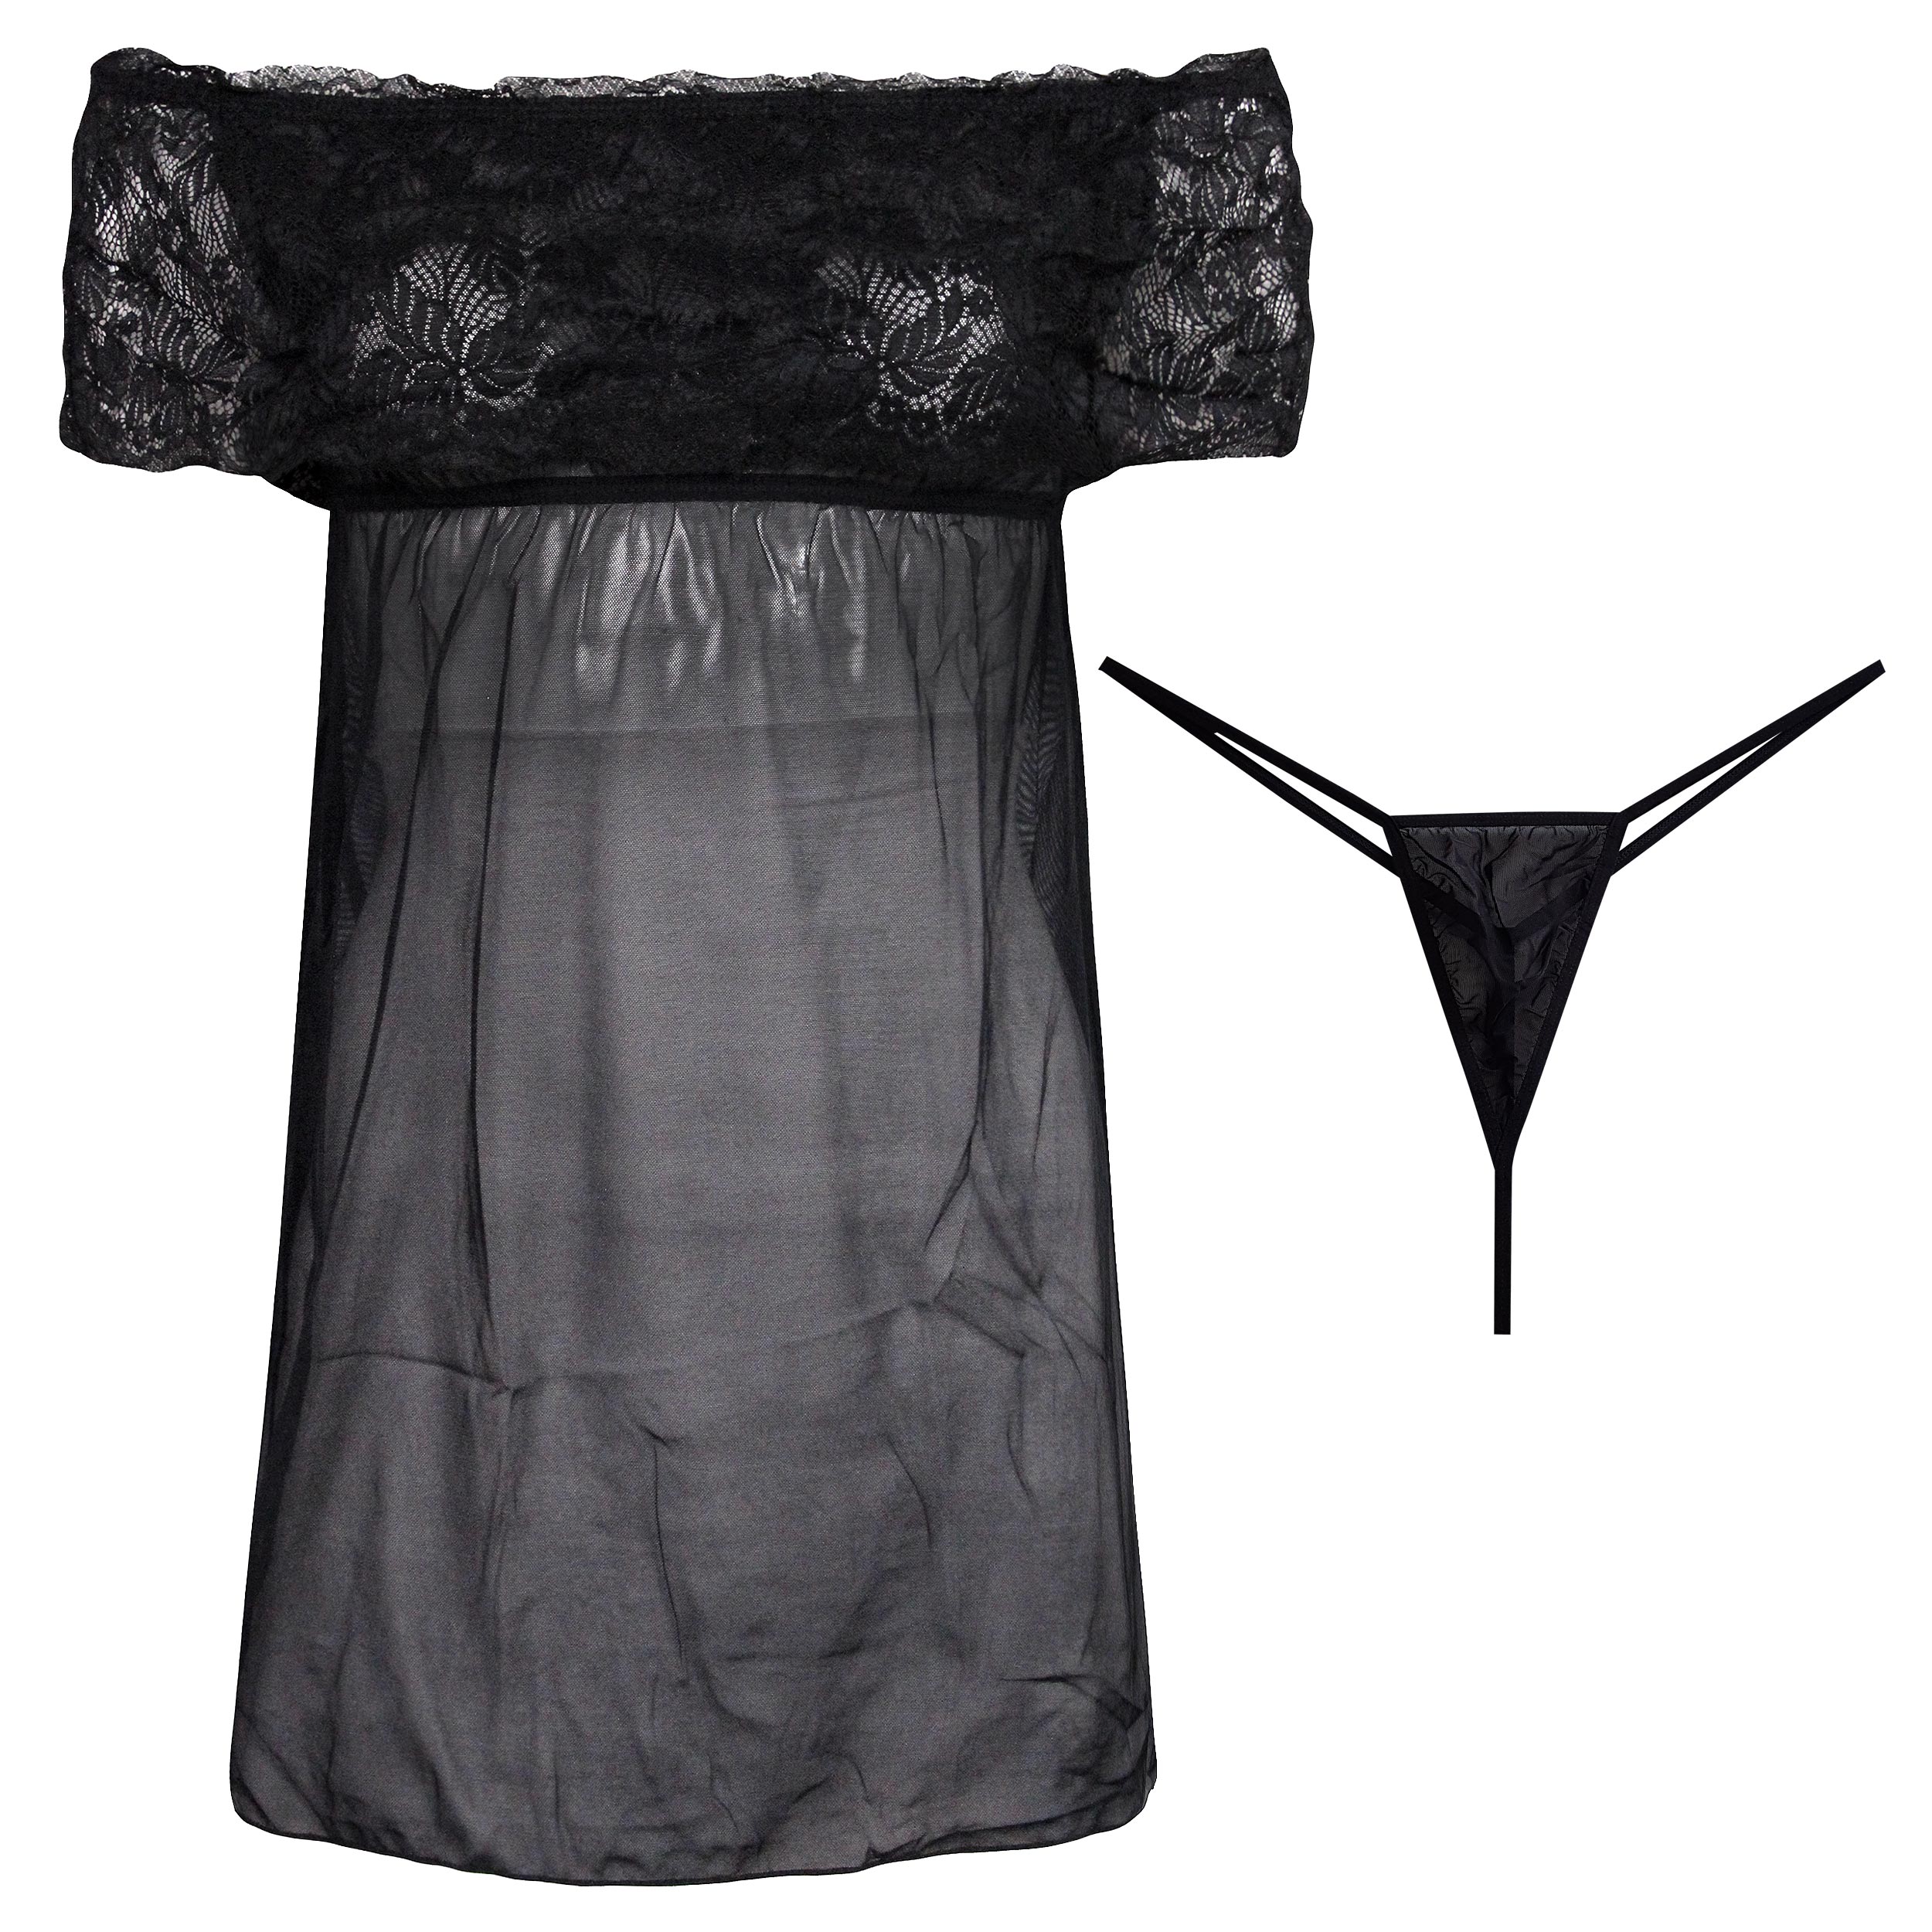 لباس خواب زنانه مدل گیپوری کد 4311-21008